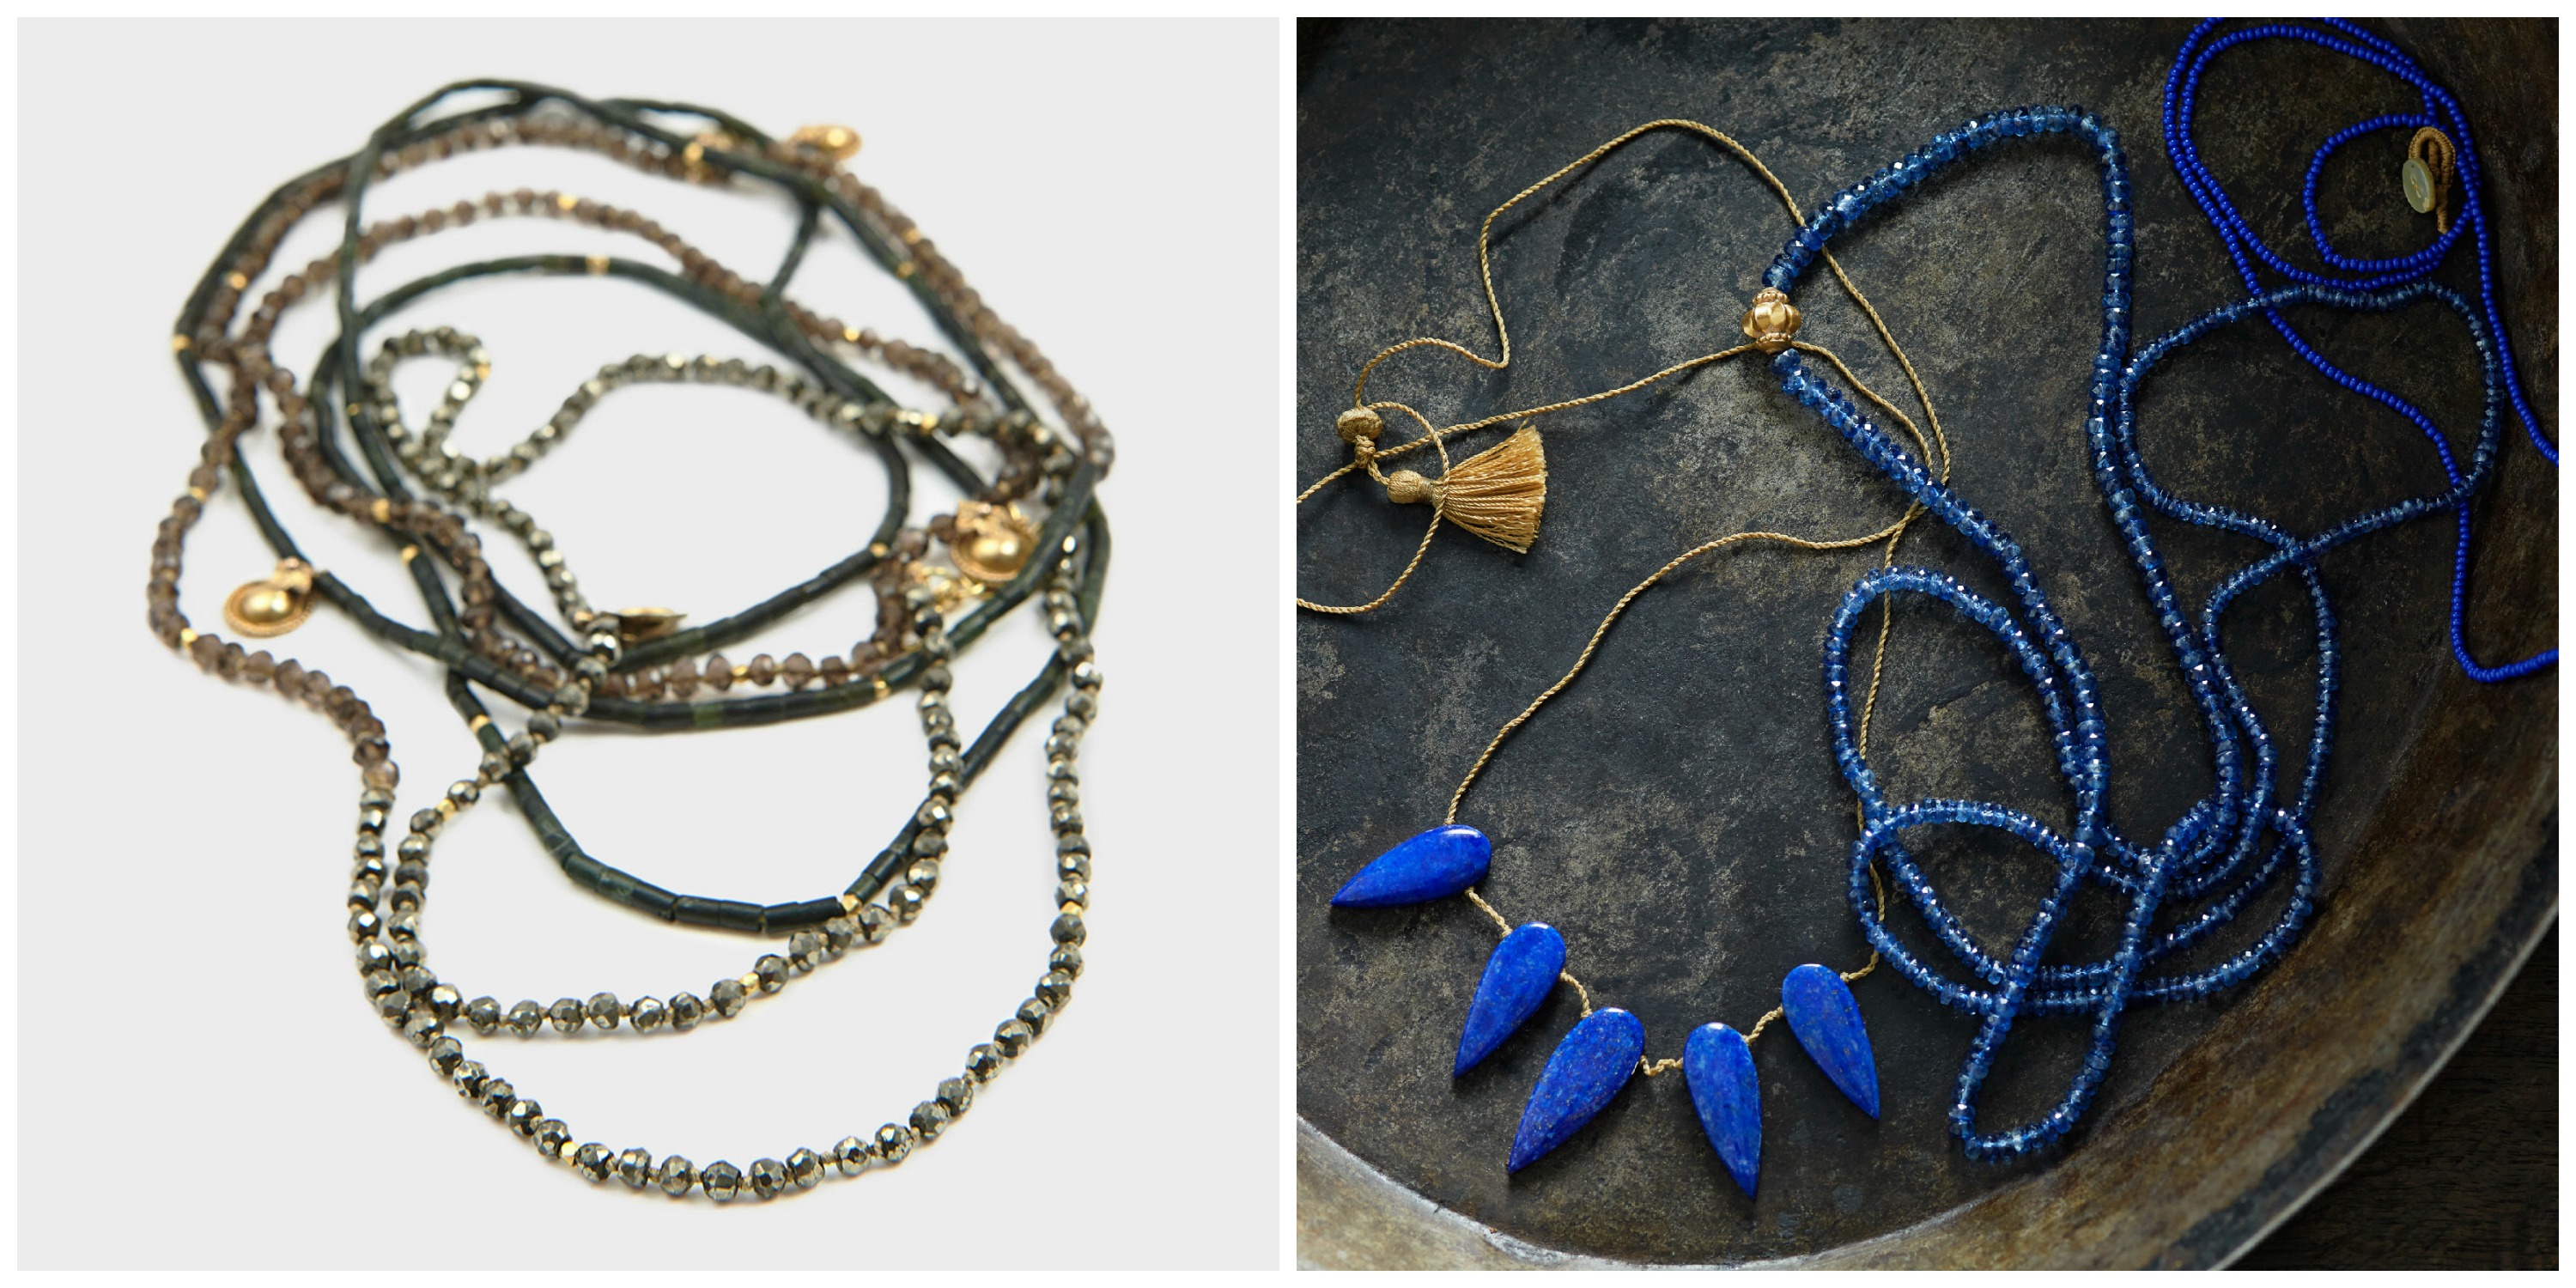 Lena Layering Necklaces